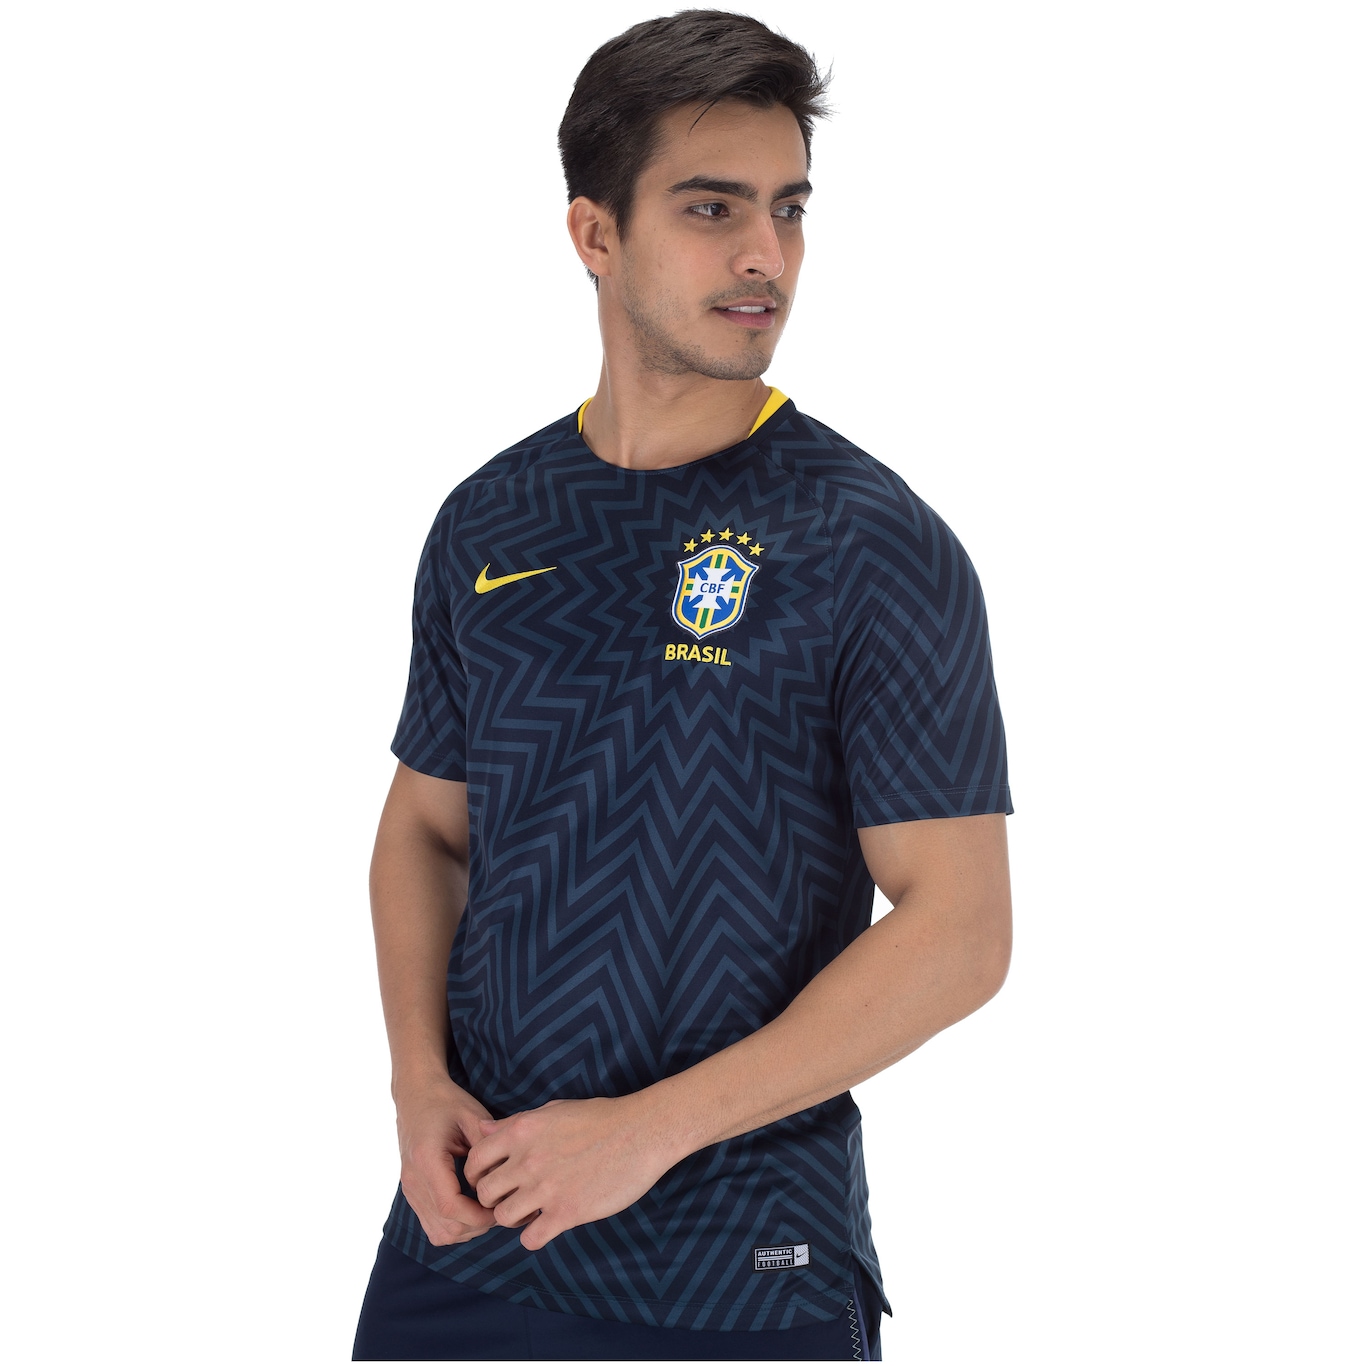 Camisa Pré-Jogo da Seleção Brasileira 2018 Nike - Masculina